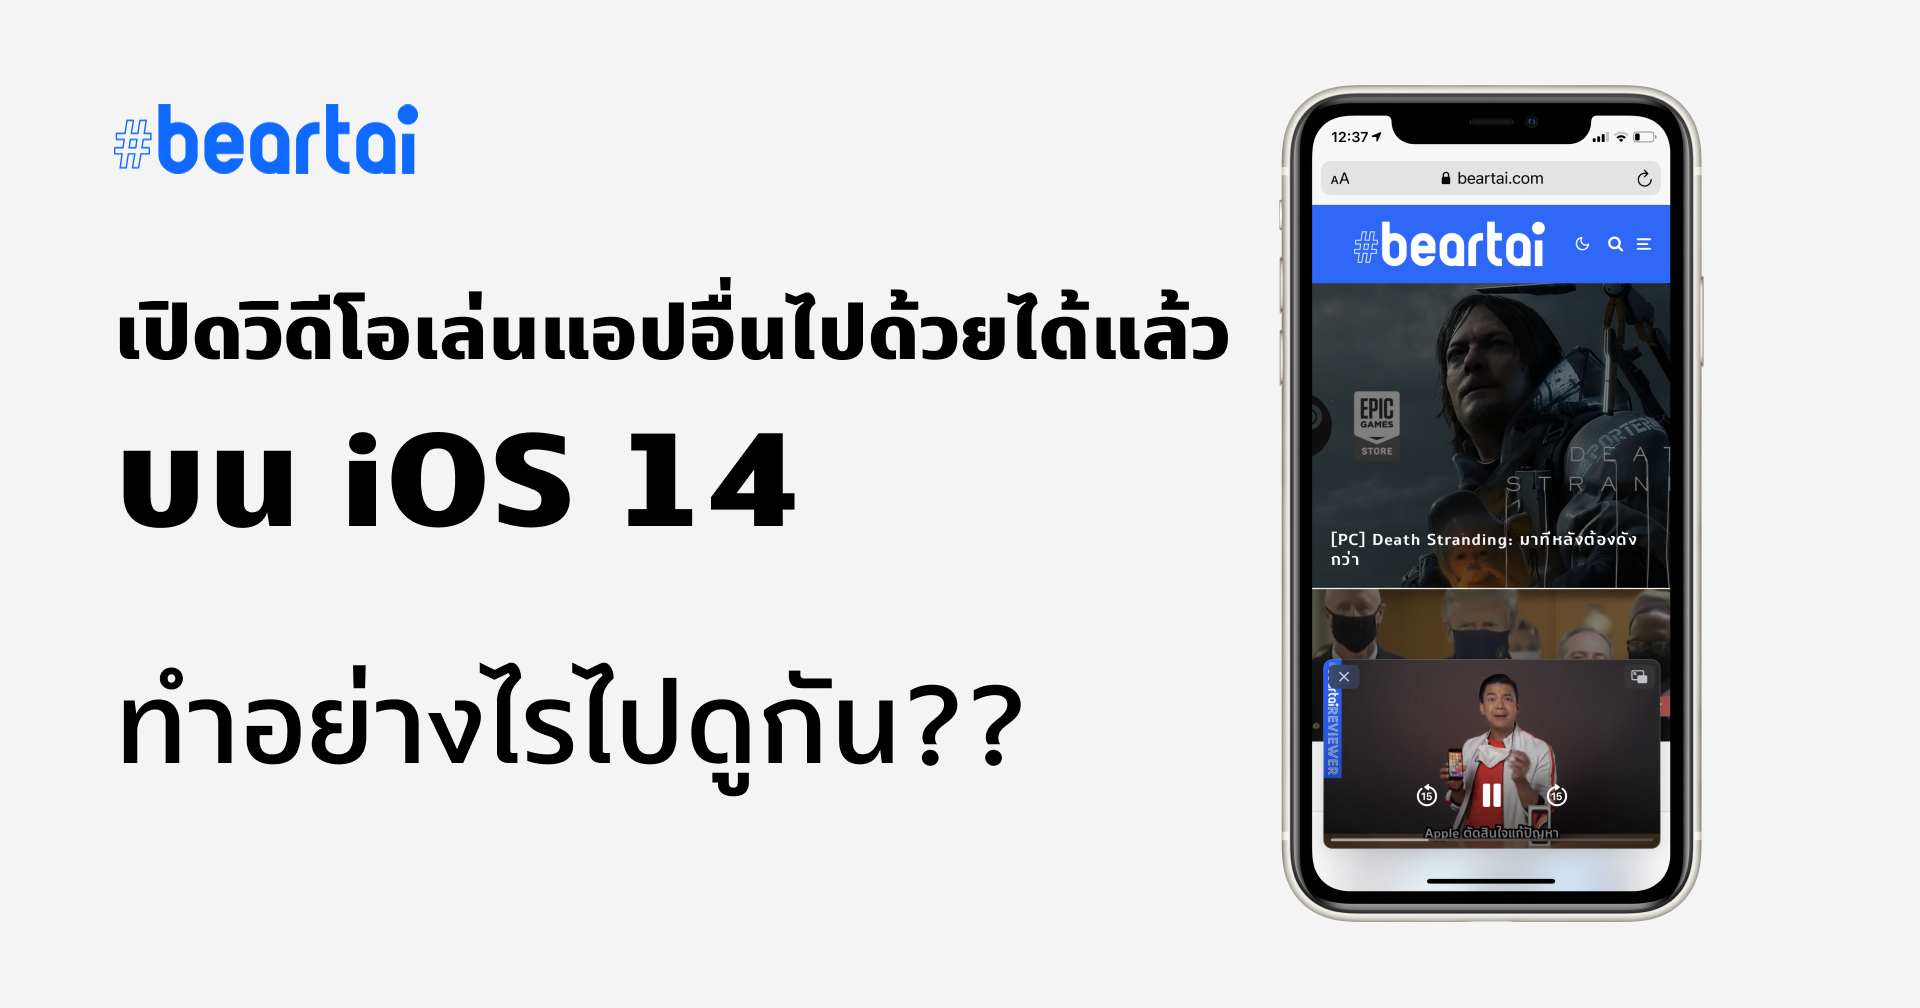 เปิดวิดีโอเล่นแอปอื่นไปด้วยได้แล้วบน iOS 14 ทำอย่างไรไปดูกัน??